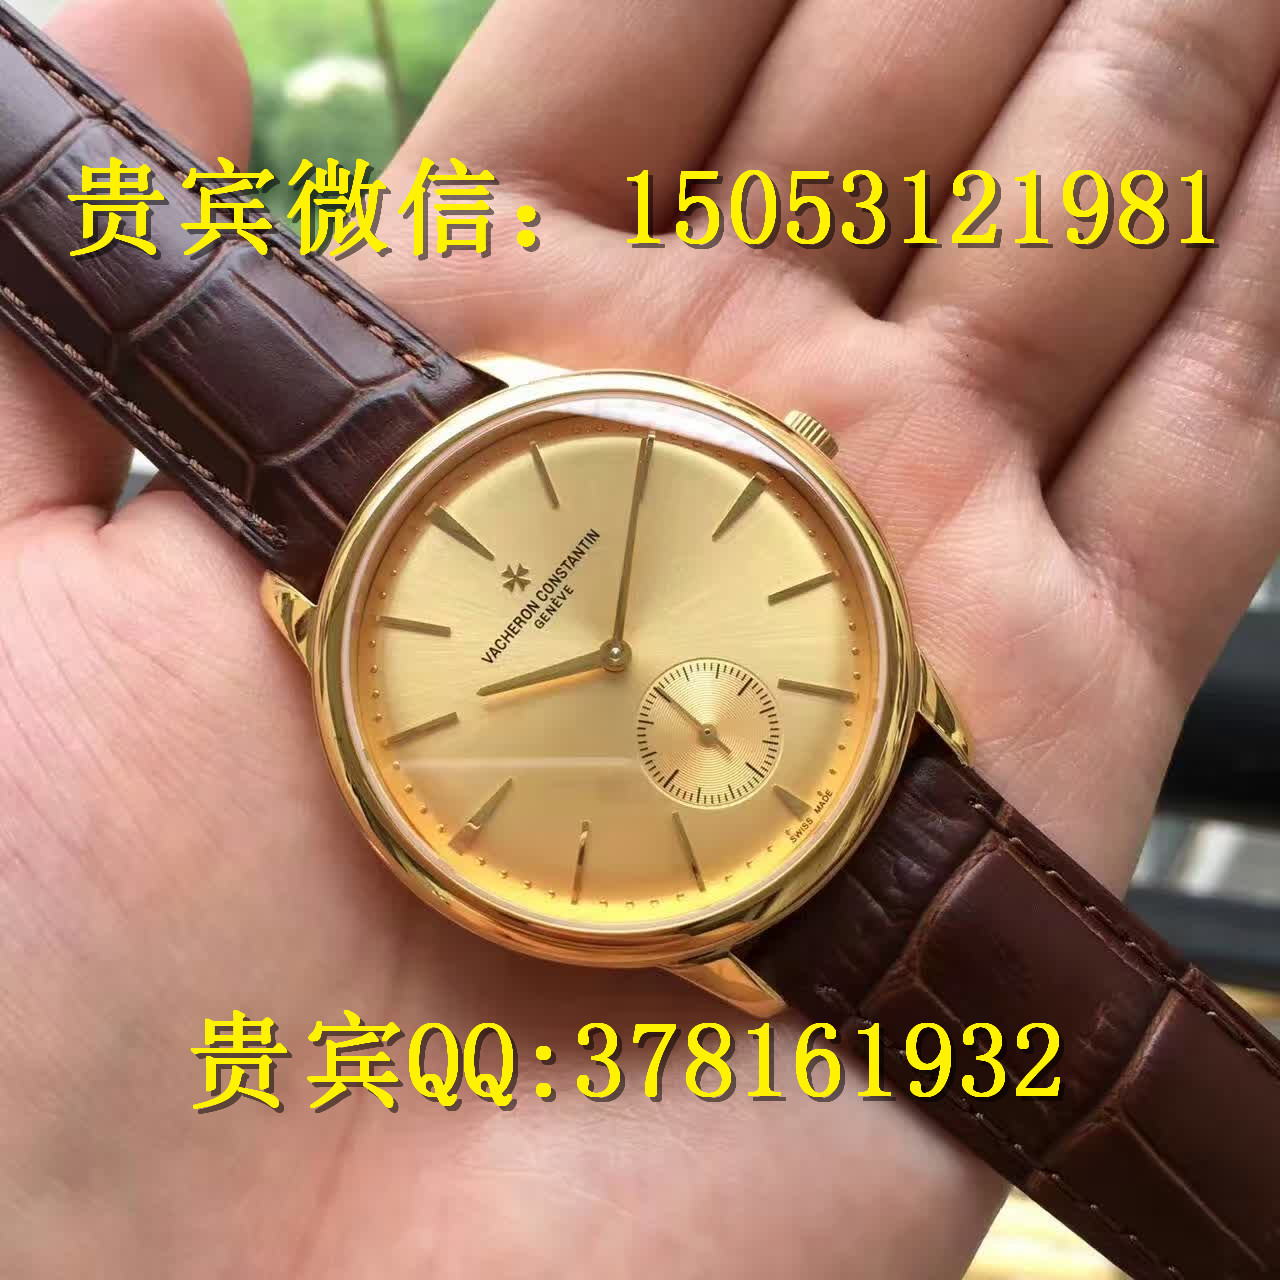 哪里有卖江诗丹顿超薄机械手表的江诗丹顿超薄手表得多少钱卖超薄机械图片